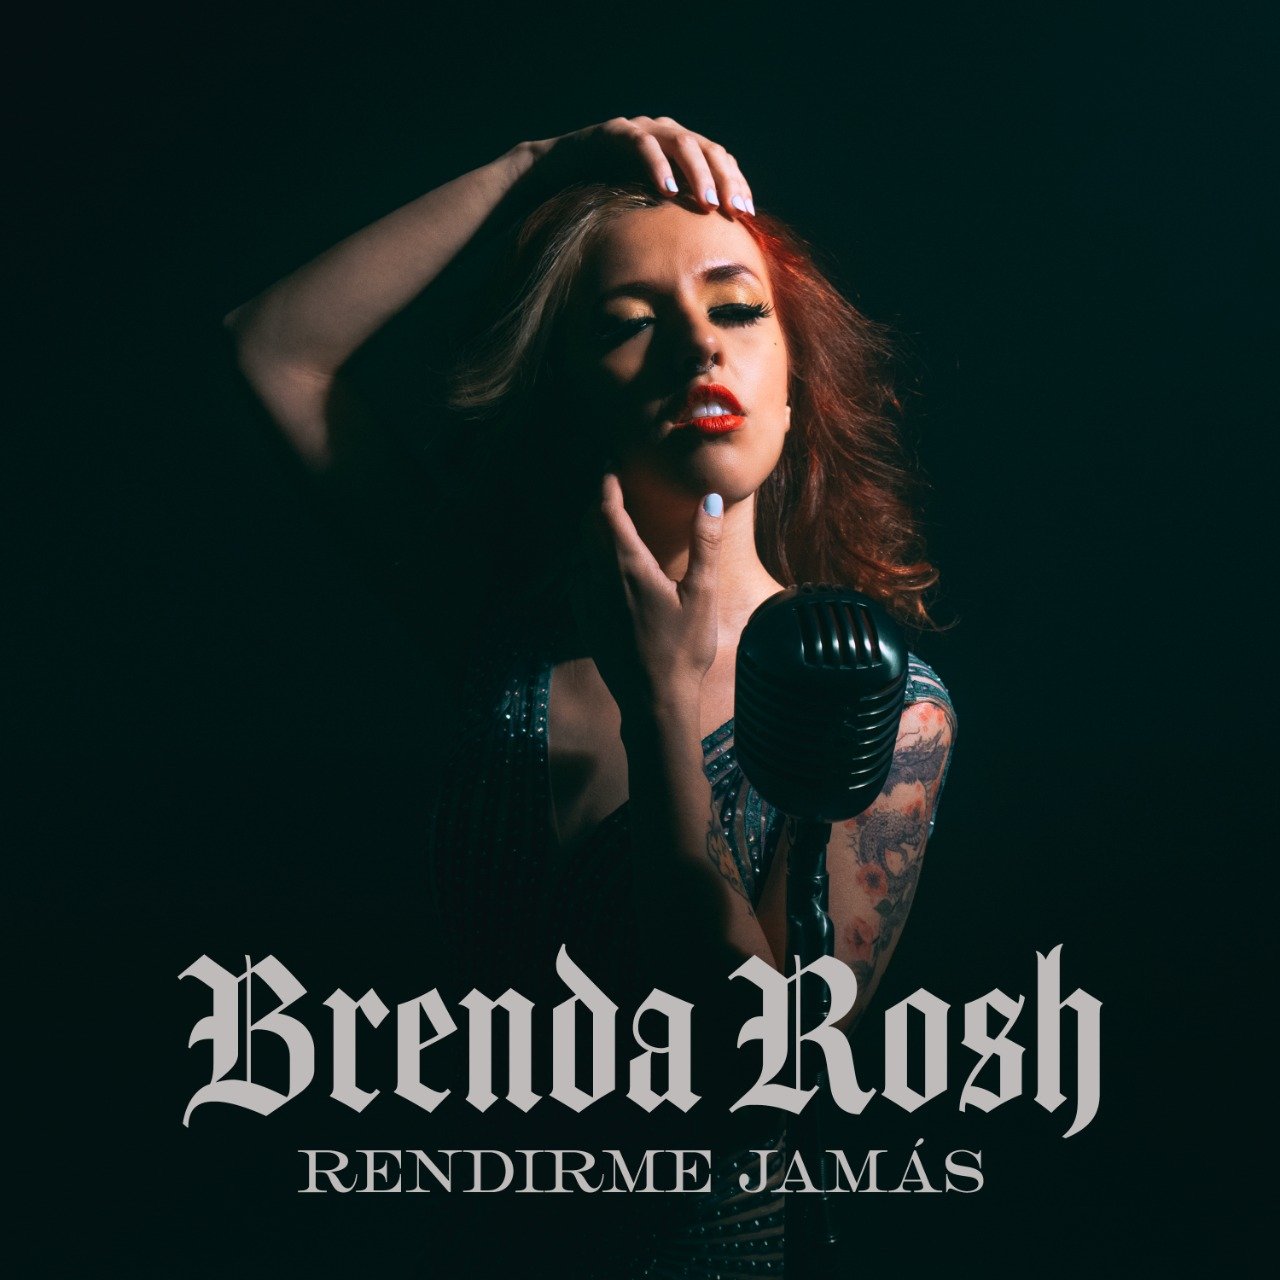 Brenda Rosh estrena "Rendirme Jamás" 